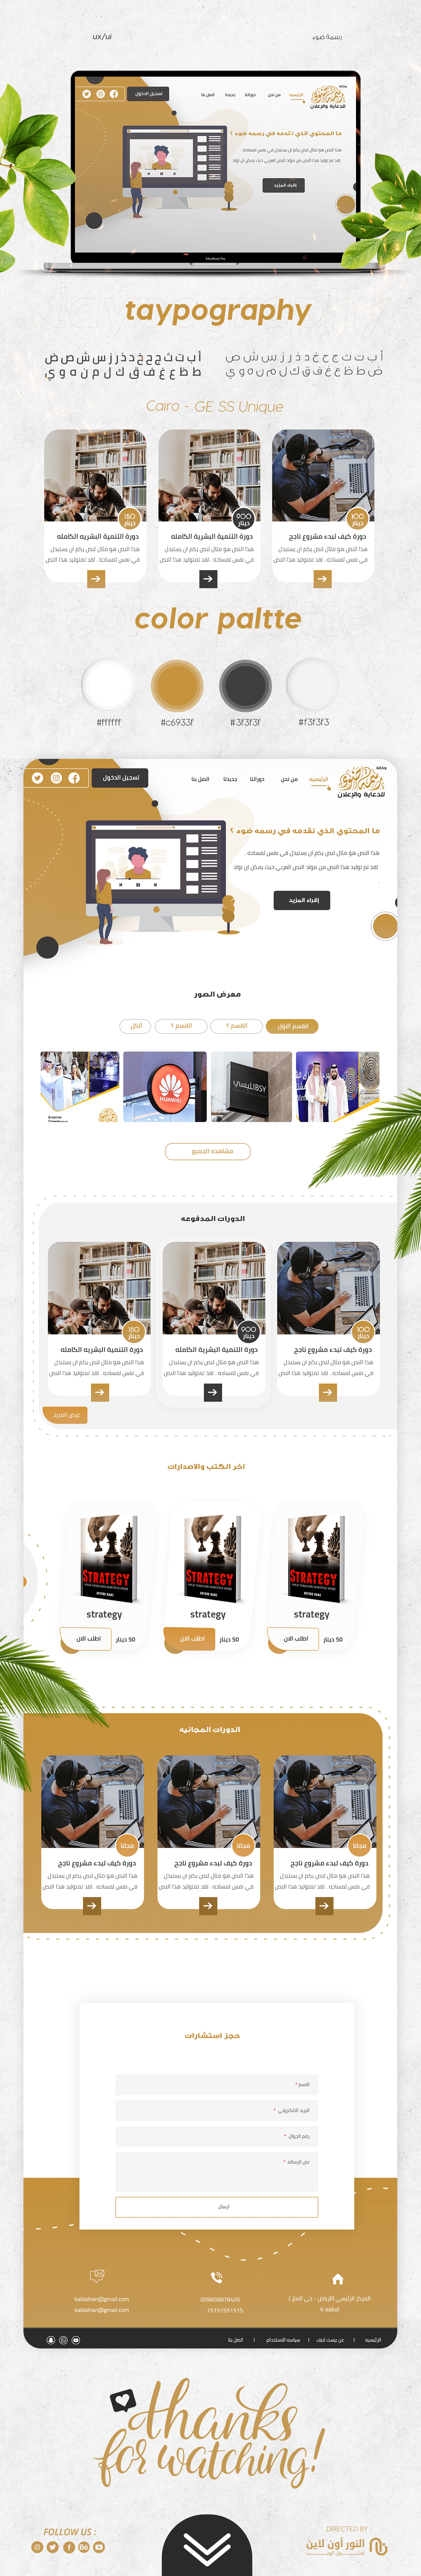 agency concept design ui design UI/UX UX design Webdesign Website Agency website